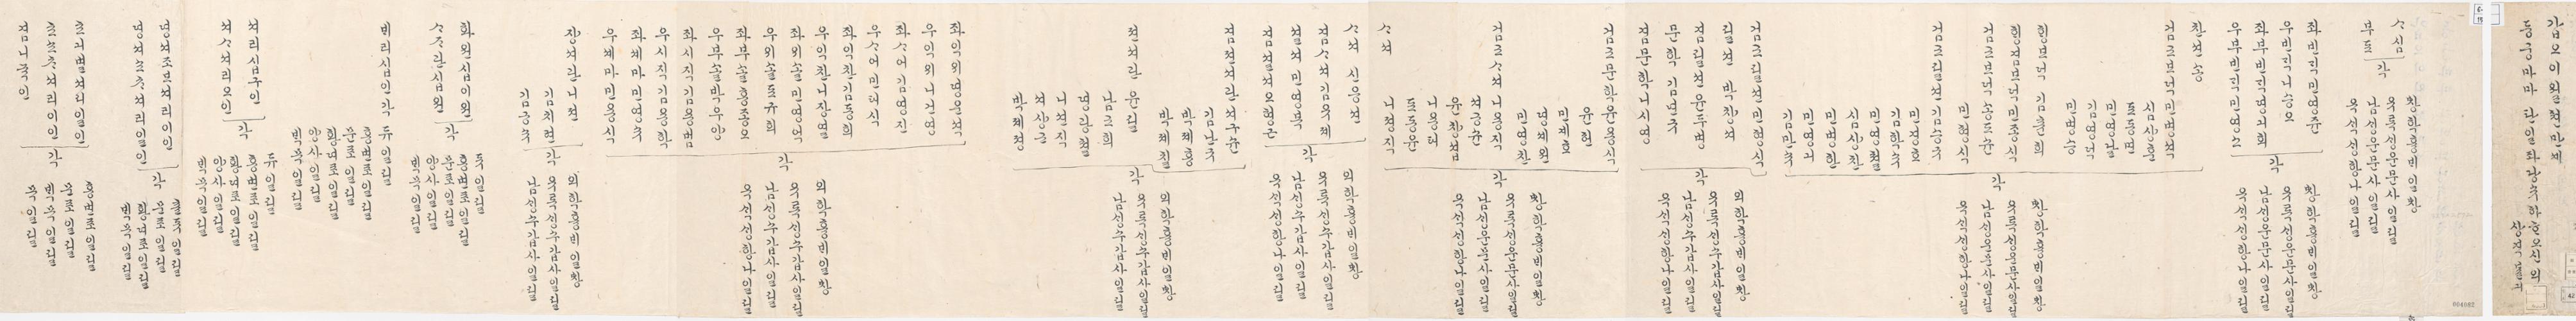 2_1894년 2월 왕세자 탄일 기념 상격 발기 1.jpg